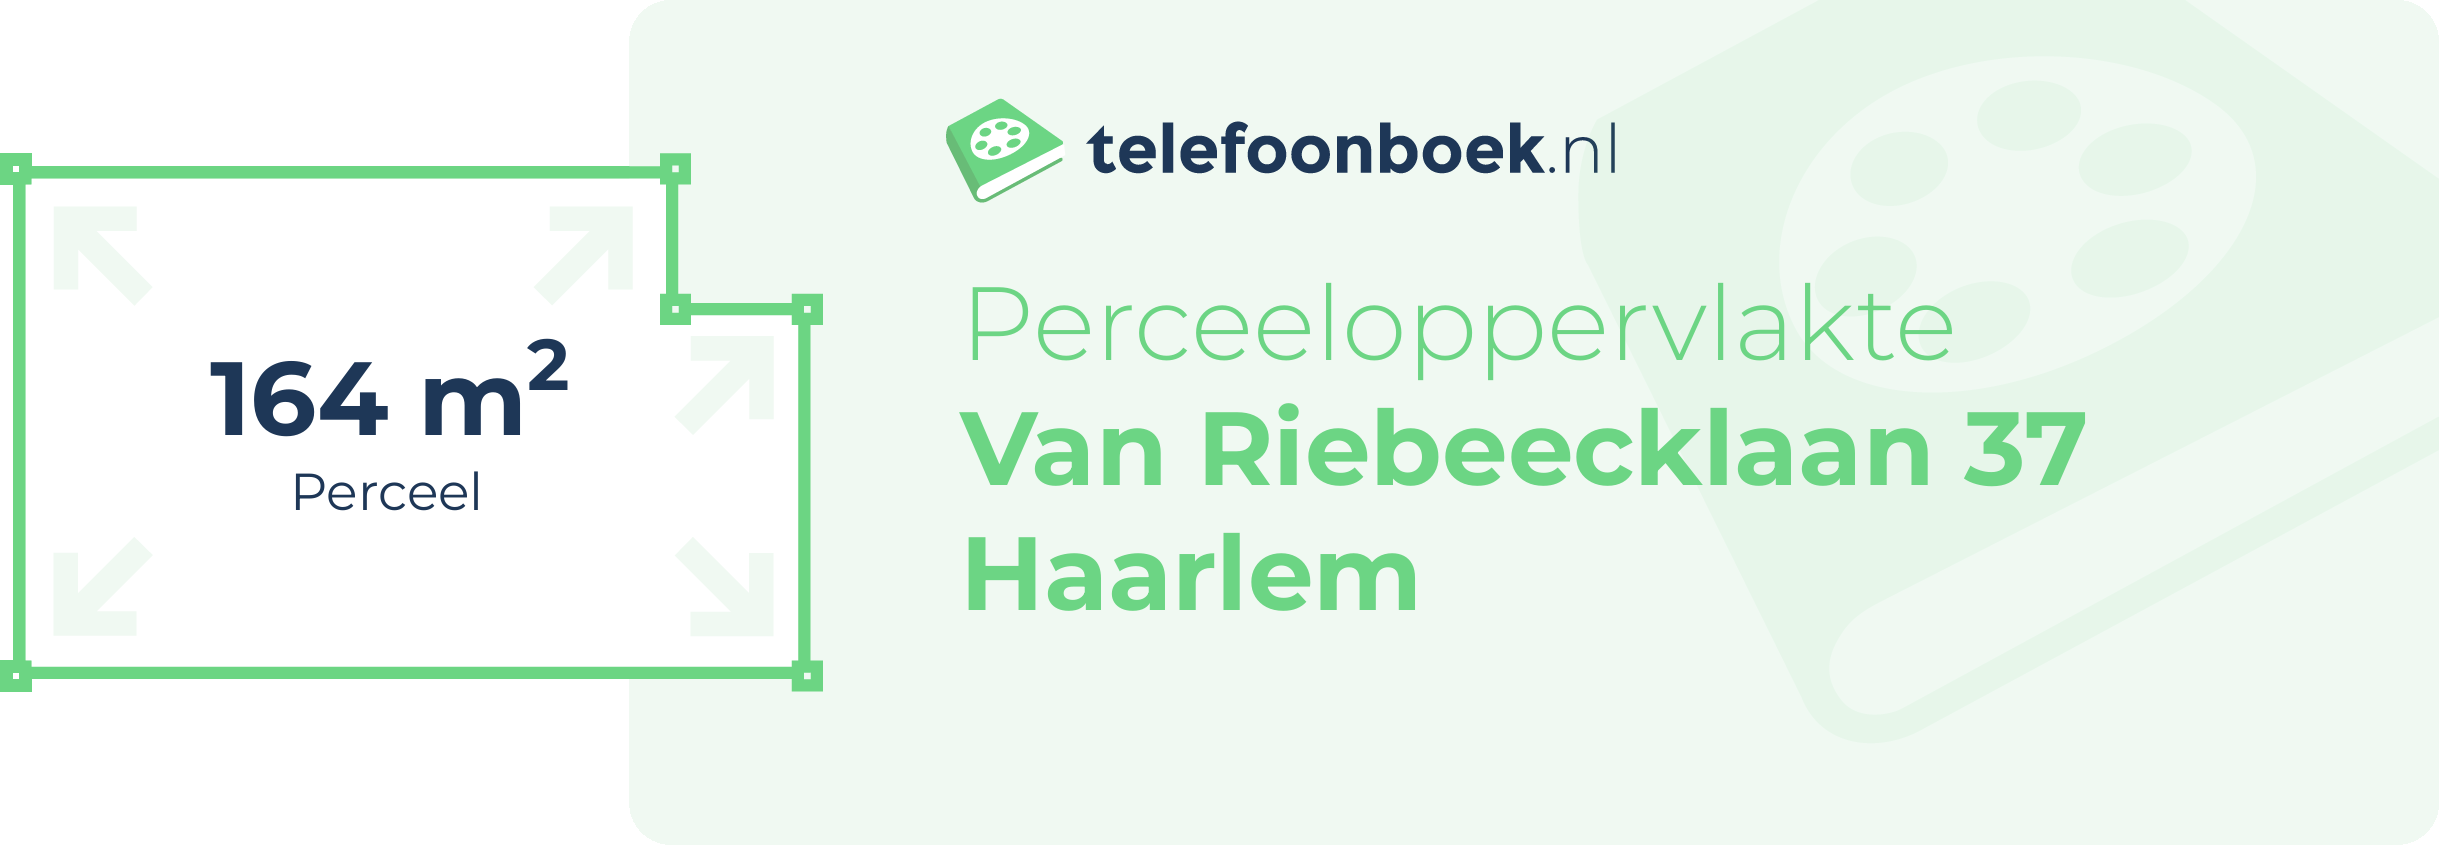 Perceeloppervlakte Van Riebeecklaan 37 Haarlem